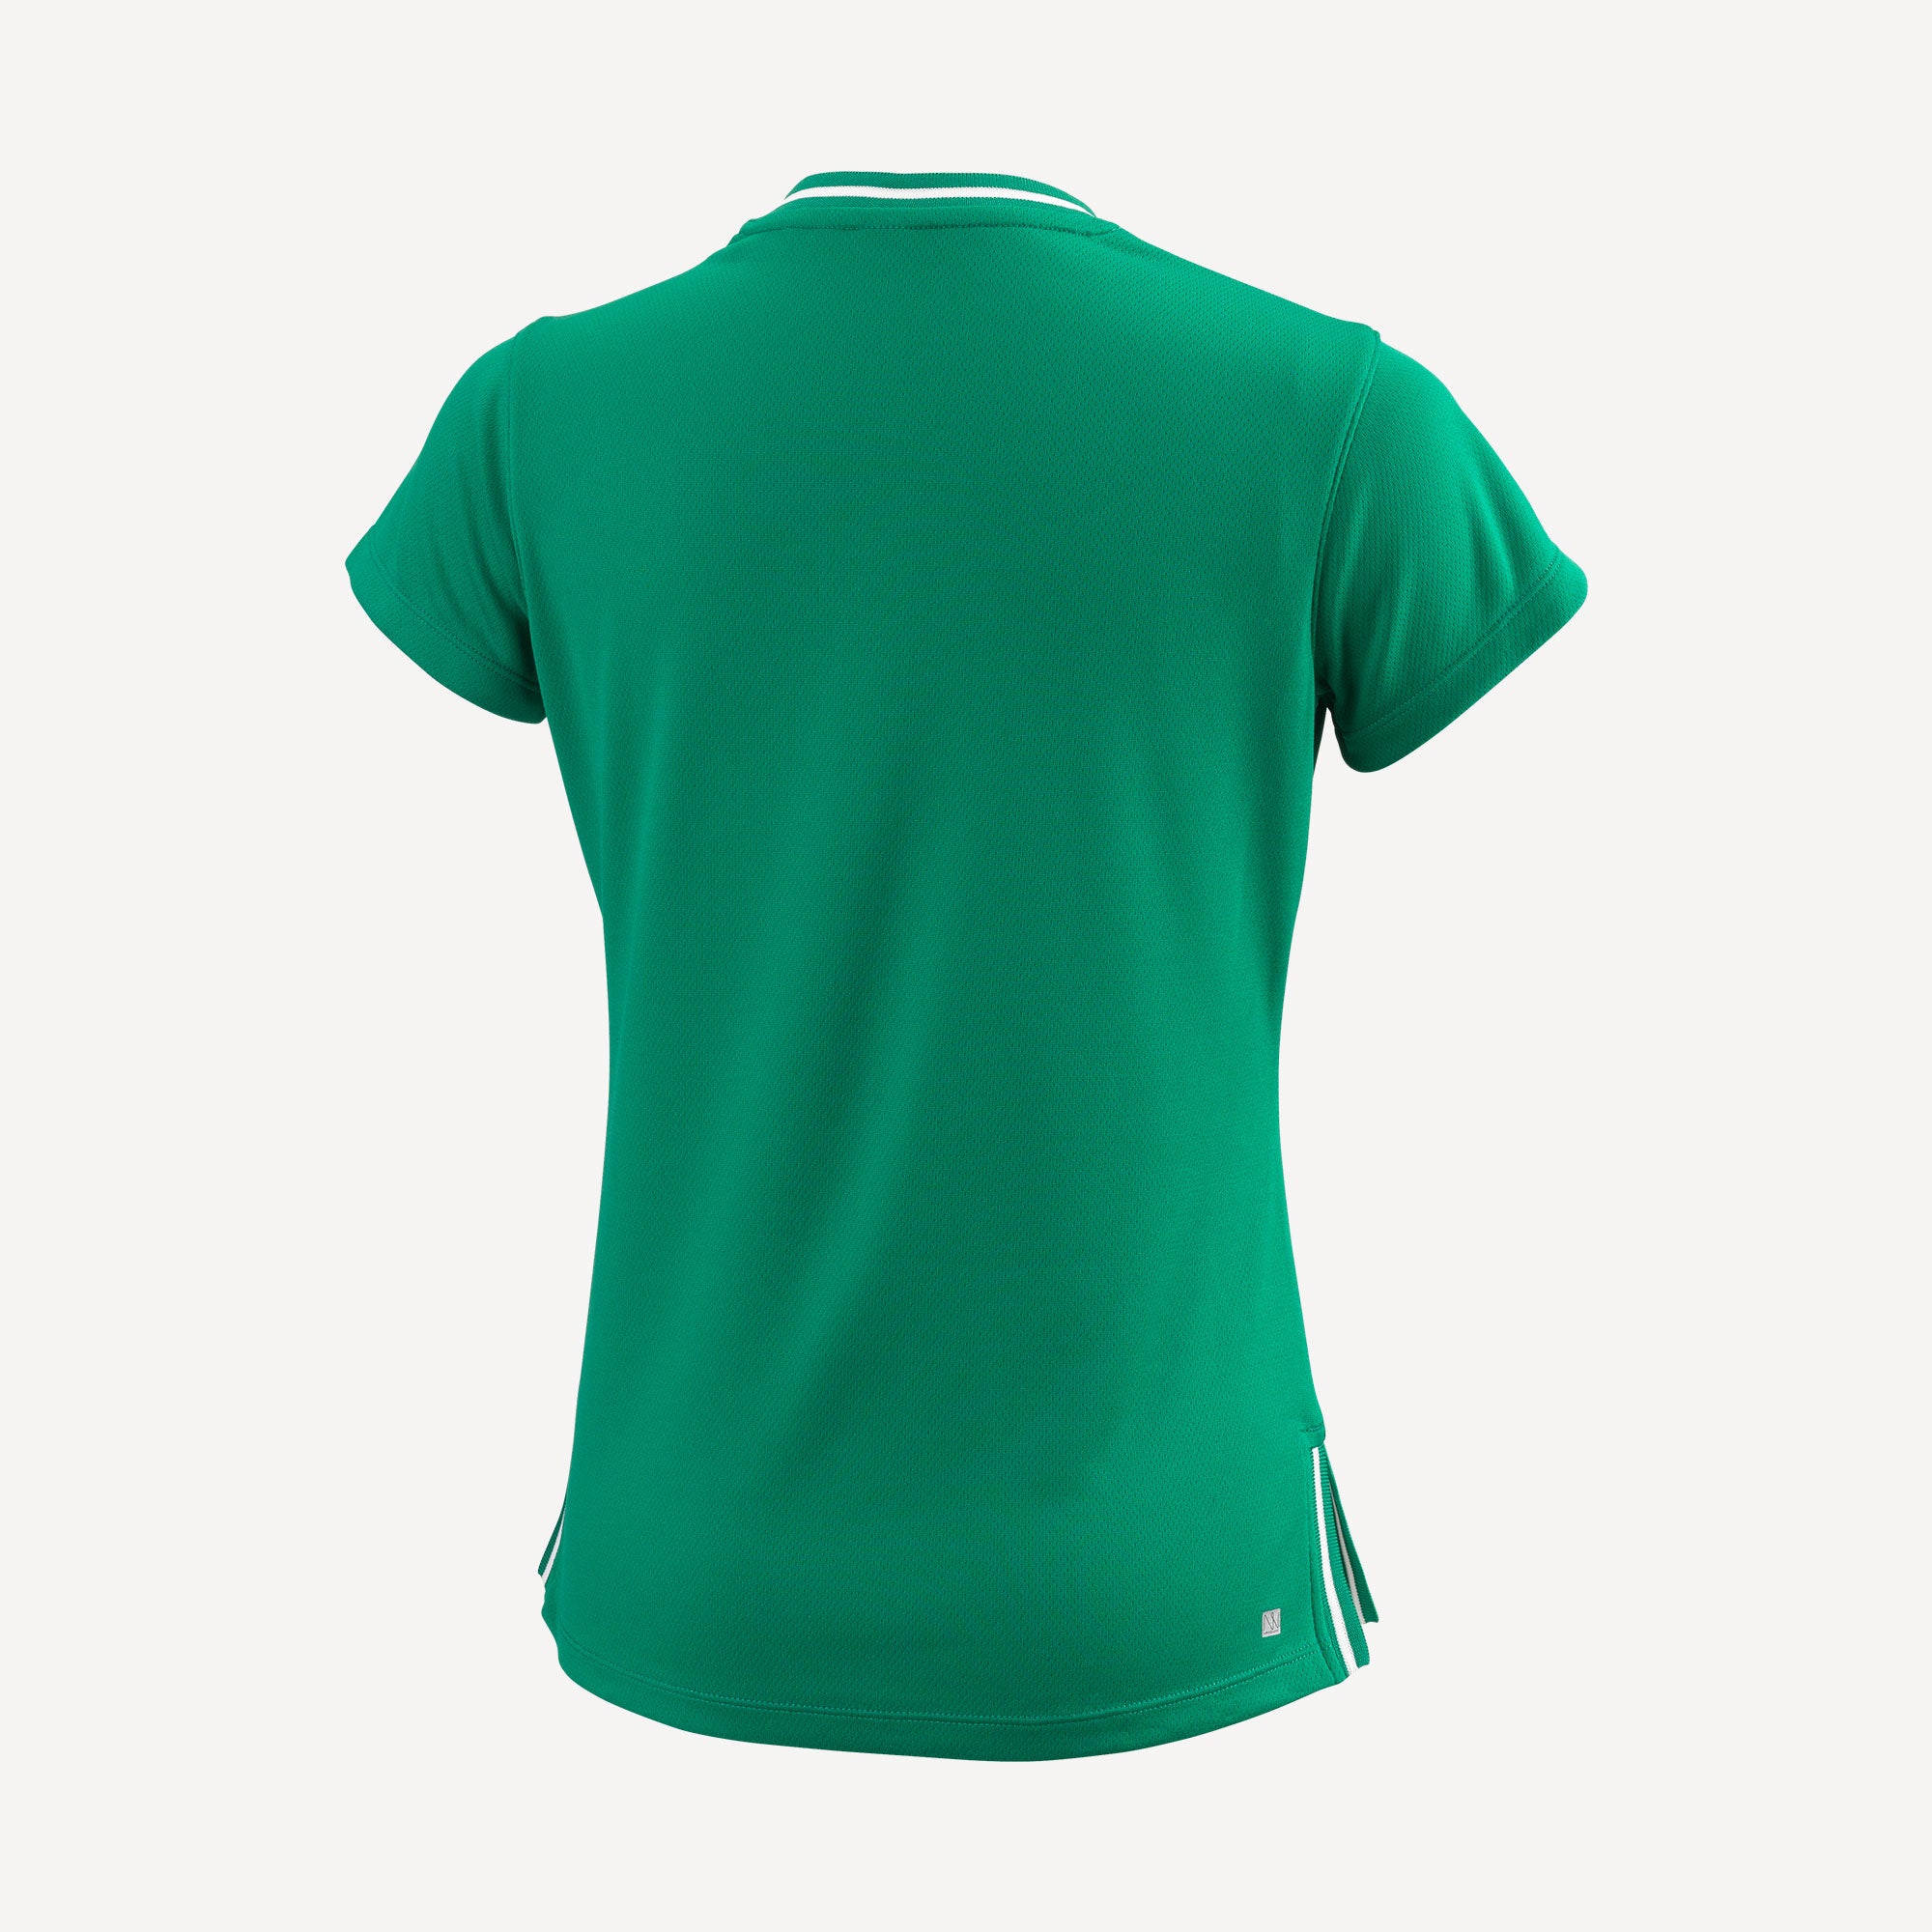 Wilson Team 2 Girls' V-Neck Tennis Shirt Green (2)